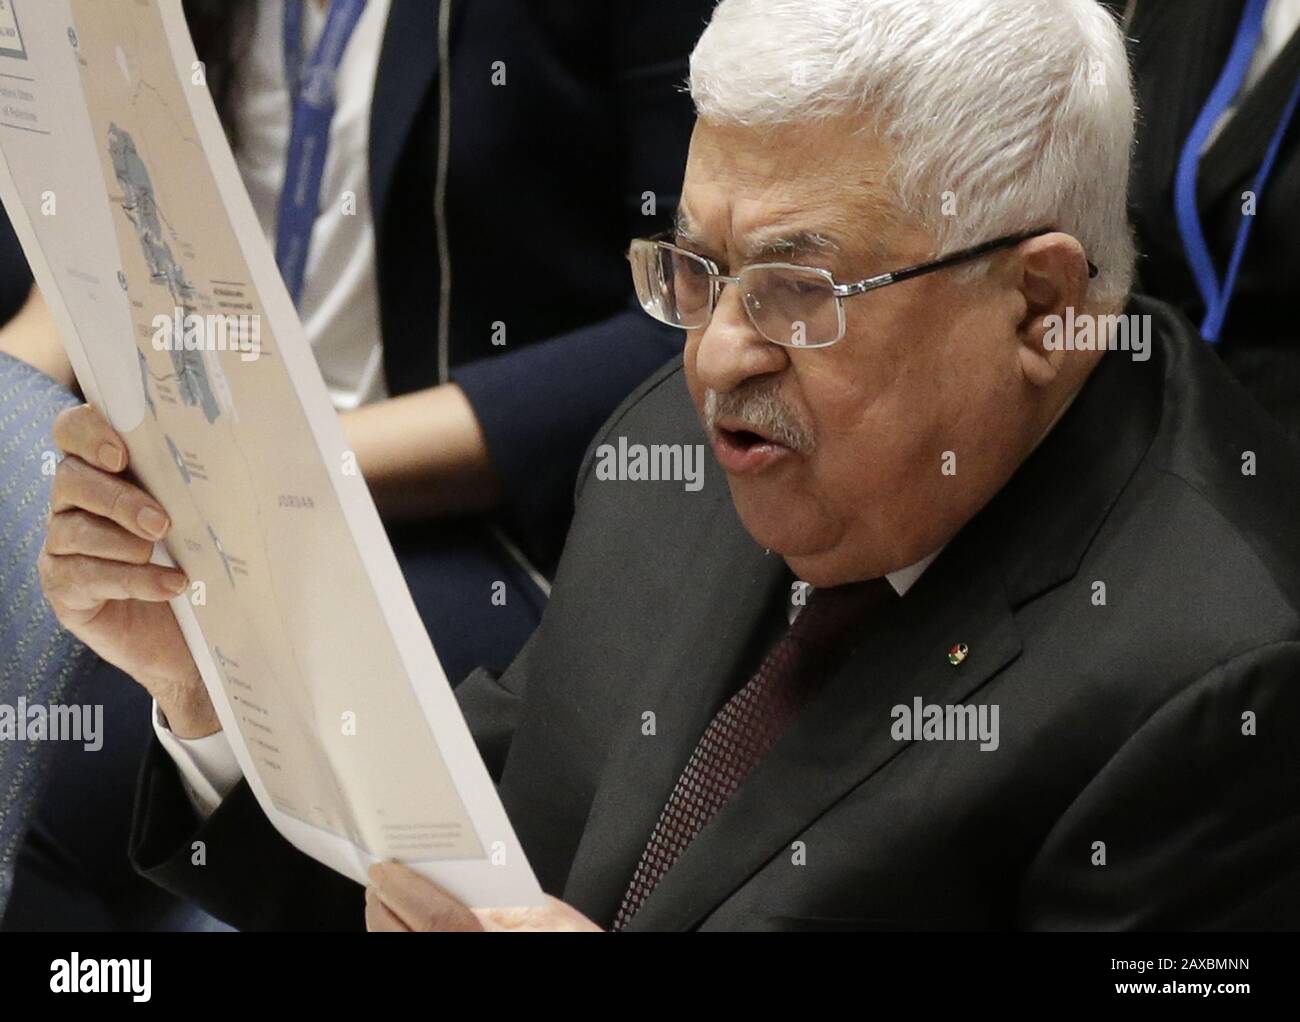 New York, Stati Uniti. 11th Feb, 2020. Il Presidente dello Stato di Palestina Mahmoud Abbas si rivolge al Consiglio di sicurezza delle Nazioni Unite sulla situazione in Medio Oriente presso la sede delle Nazioni Unite martedì 11 febbraio 2020 a New York. Foto di John Angelillo/UPI Credit: UPI/Alamy Live News Foto Stock